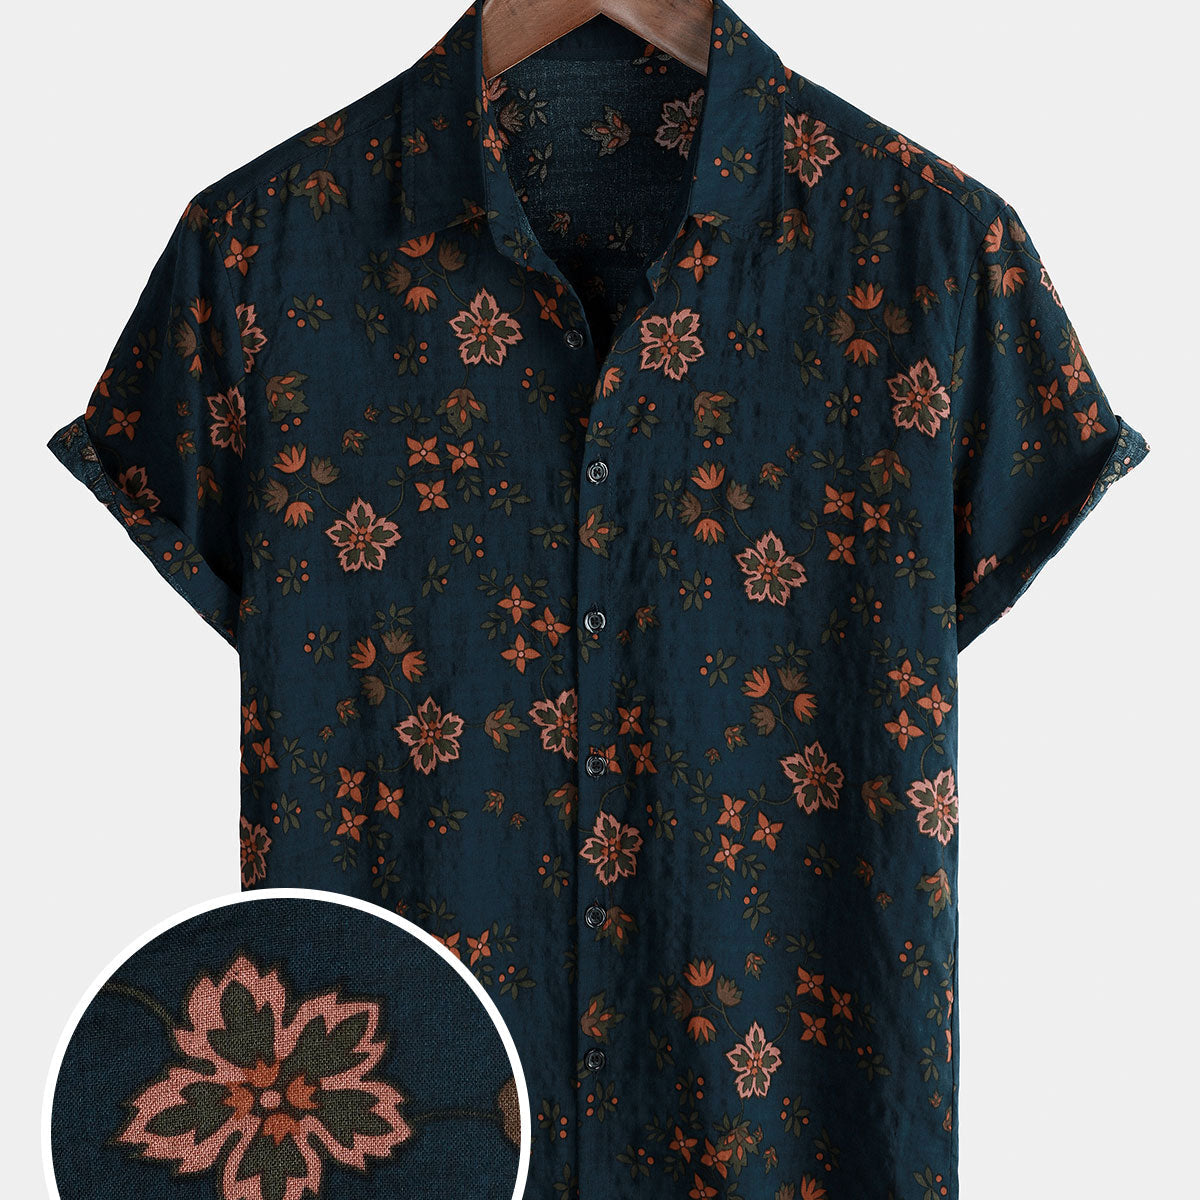 Men's Summer Floral Navy Blue Button Up Short Sleeve Cotton Shirt